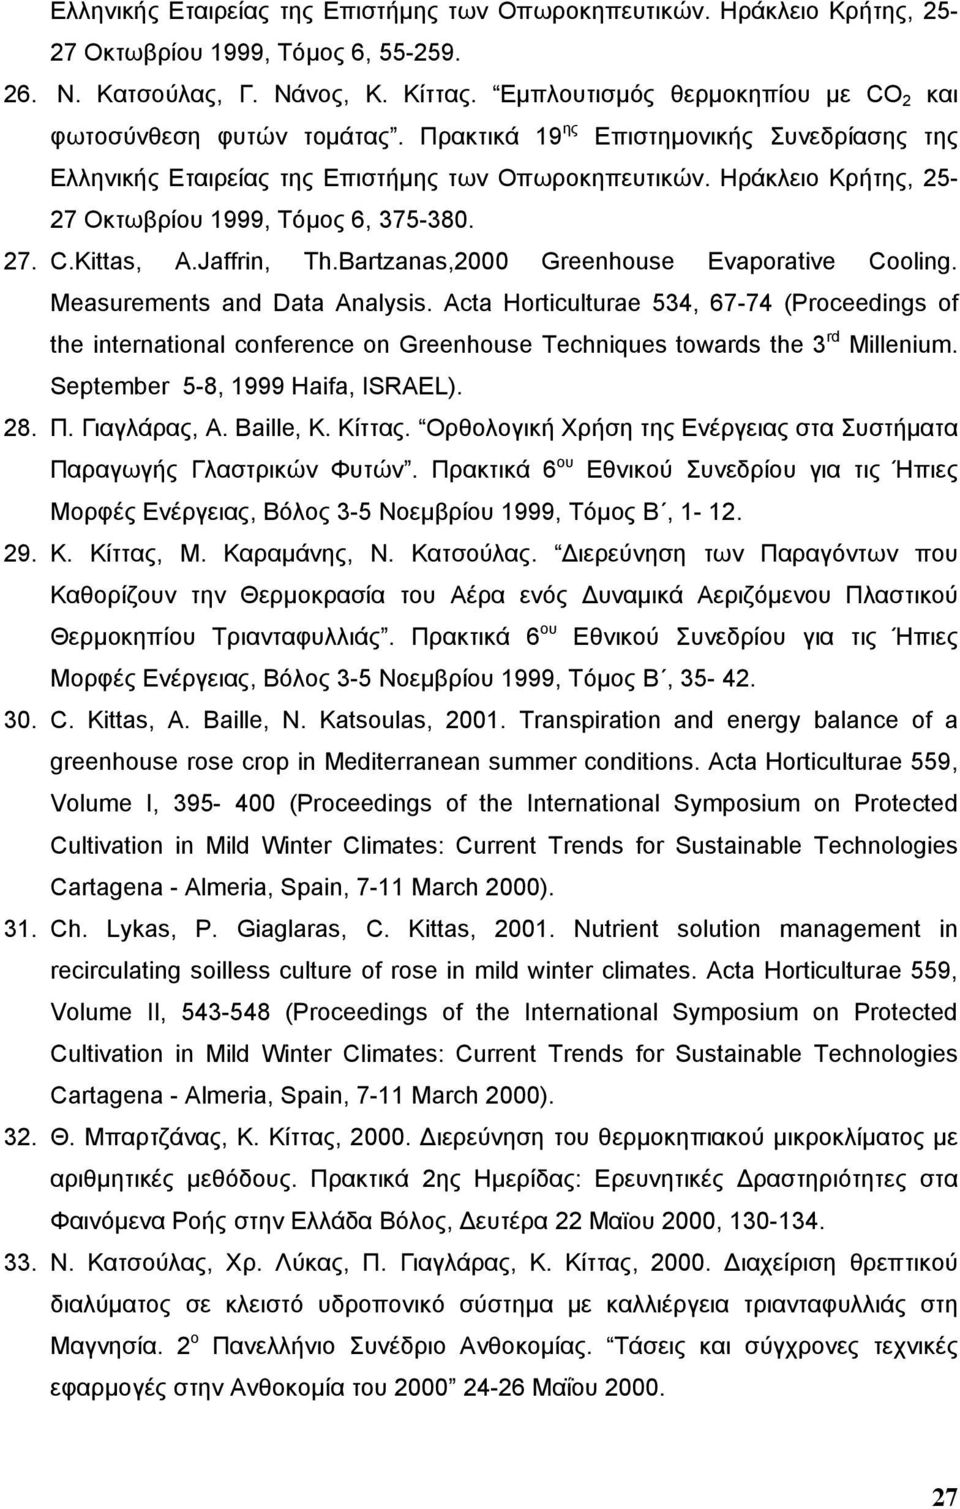 Ηράκλειο Κρήτης, 25-27 Οκτωβρίου 1999, Τόµος 6, 375-380. 27. C.Kittas, A.Jaffrin, Th.Bartzanas,2000 Greenhouse Evaporative Cooling. Measurements and Data Analysis.